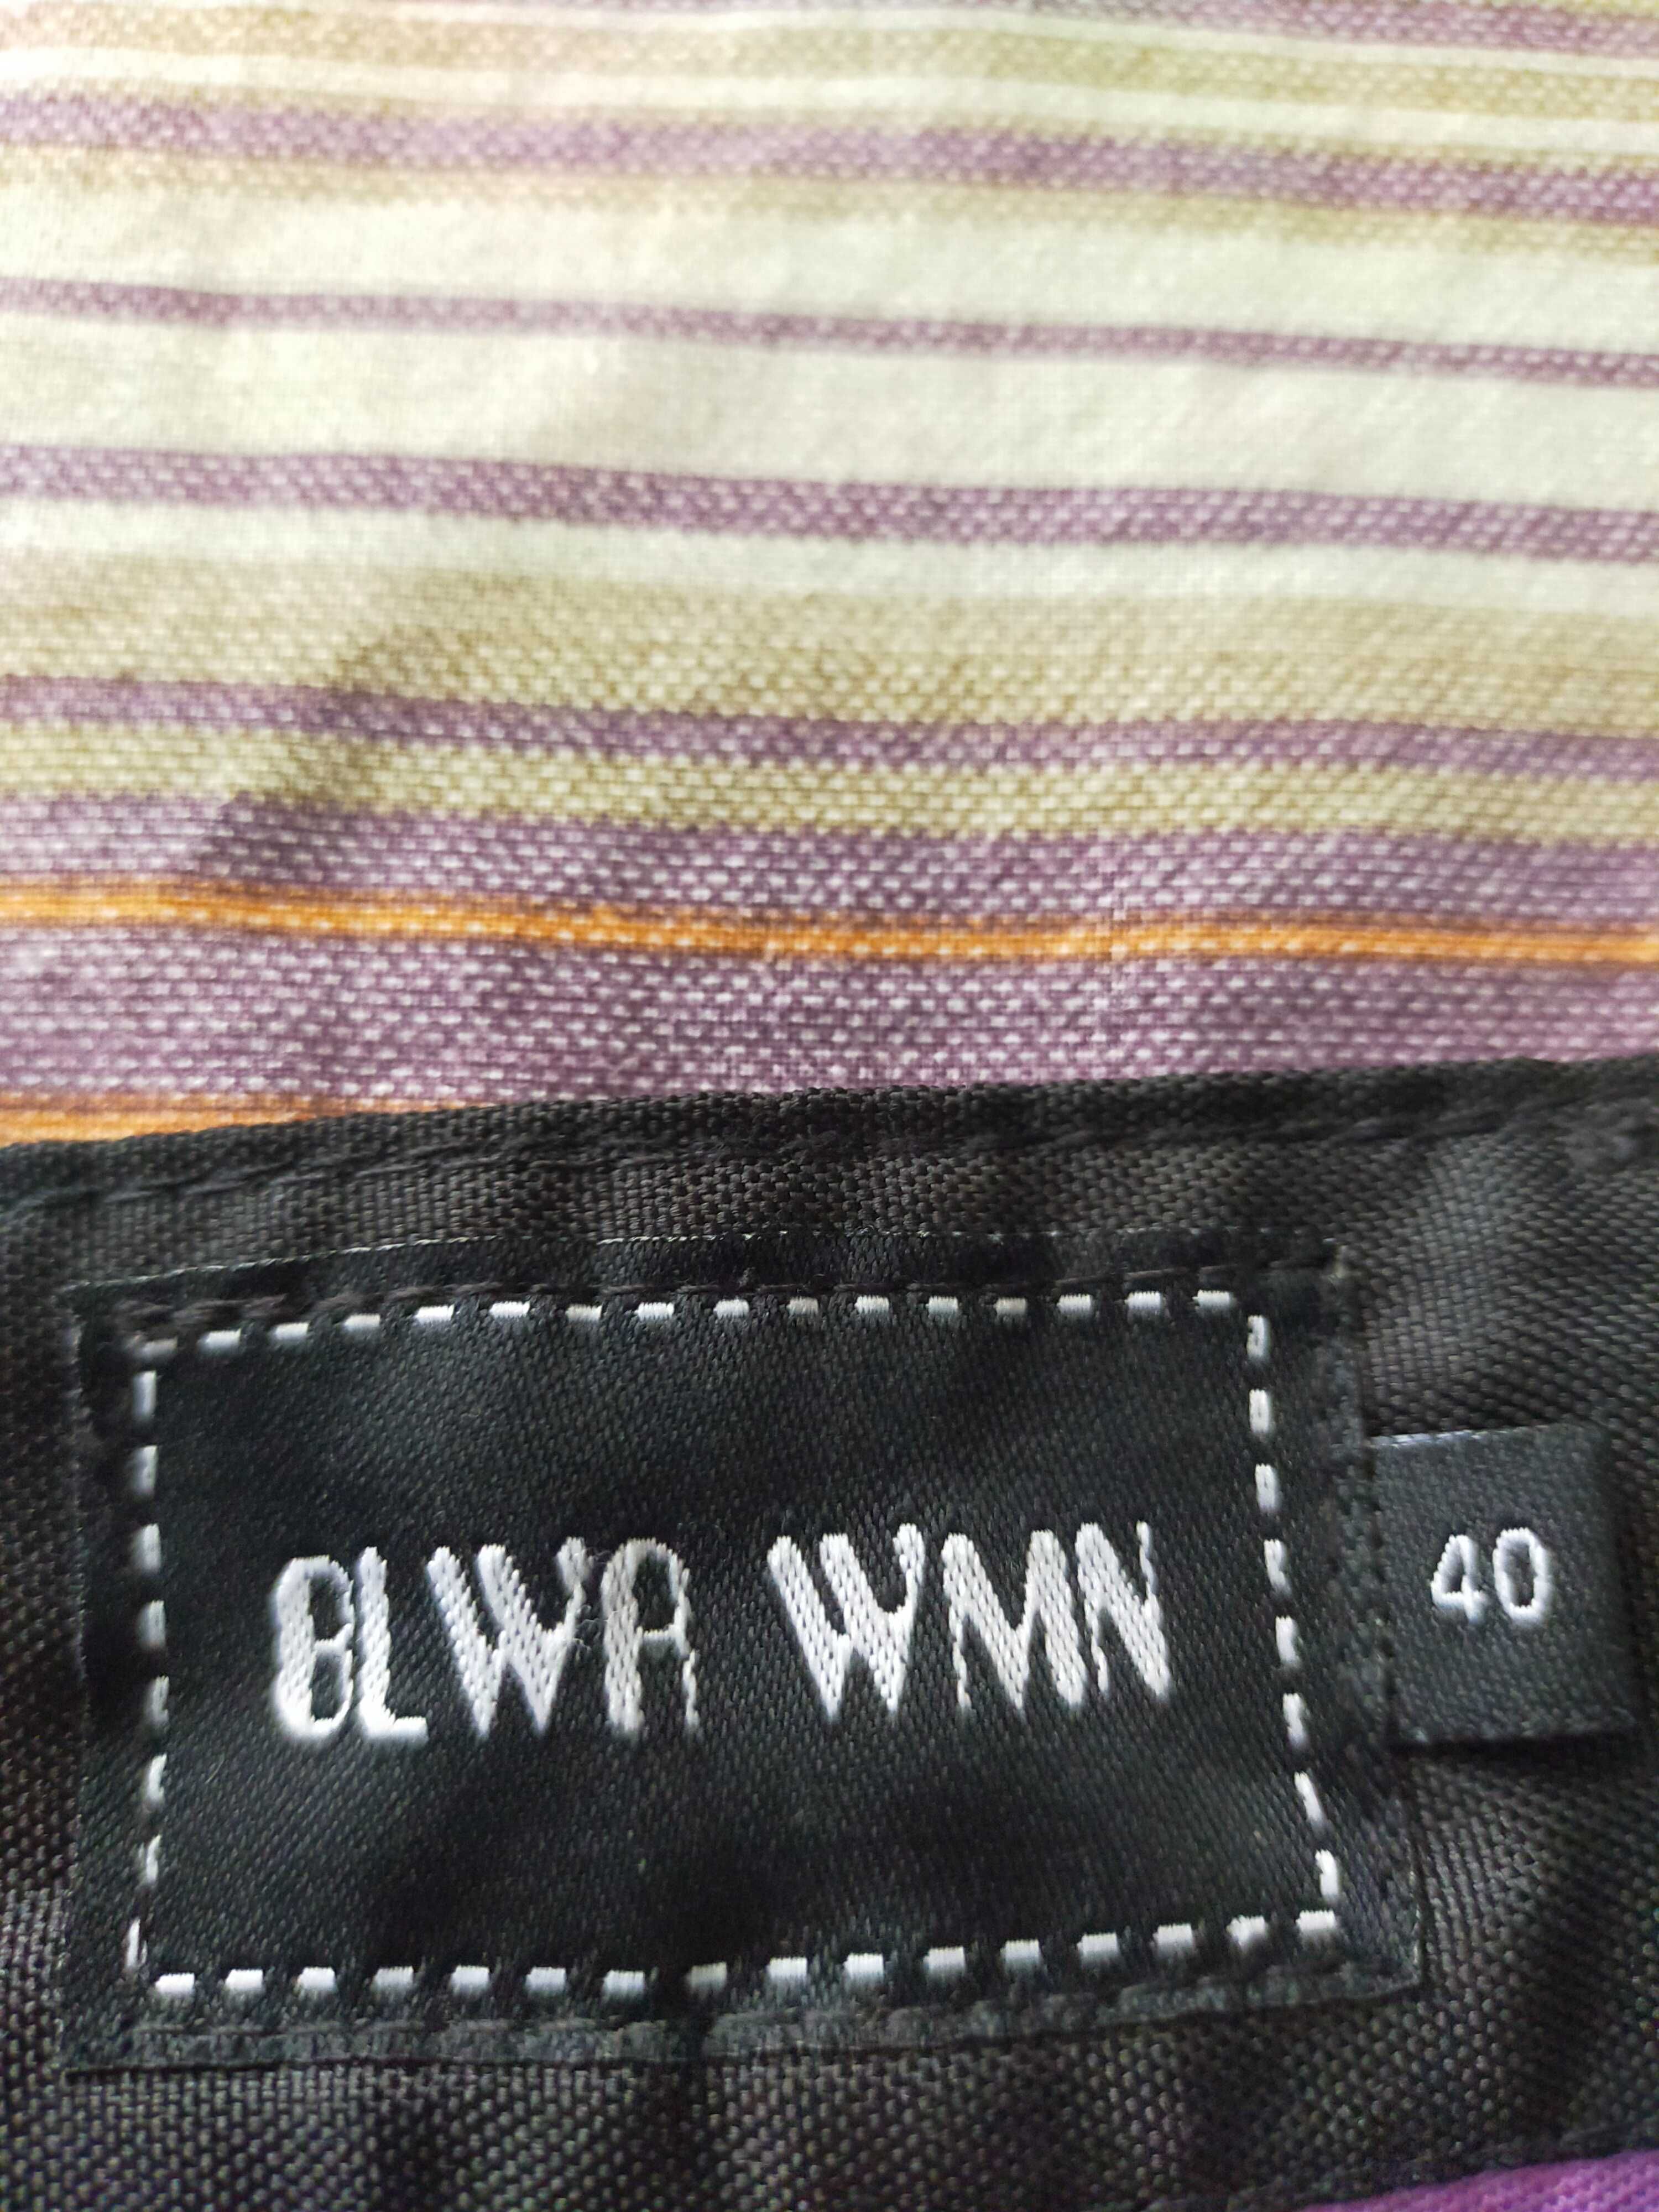 Vând pantaloni de munca BLWR WMN mărimea 40